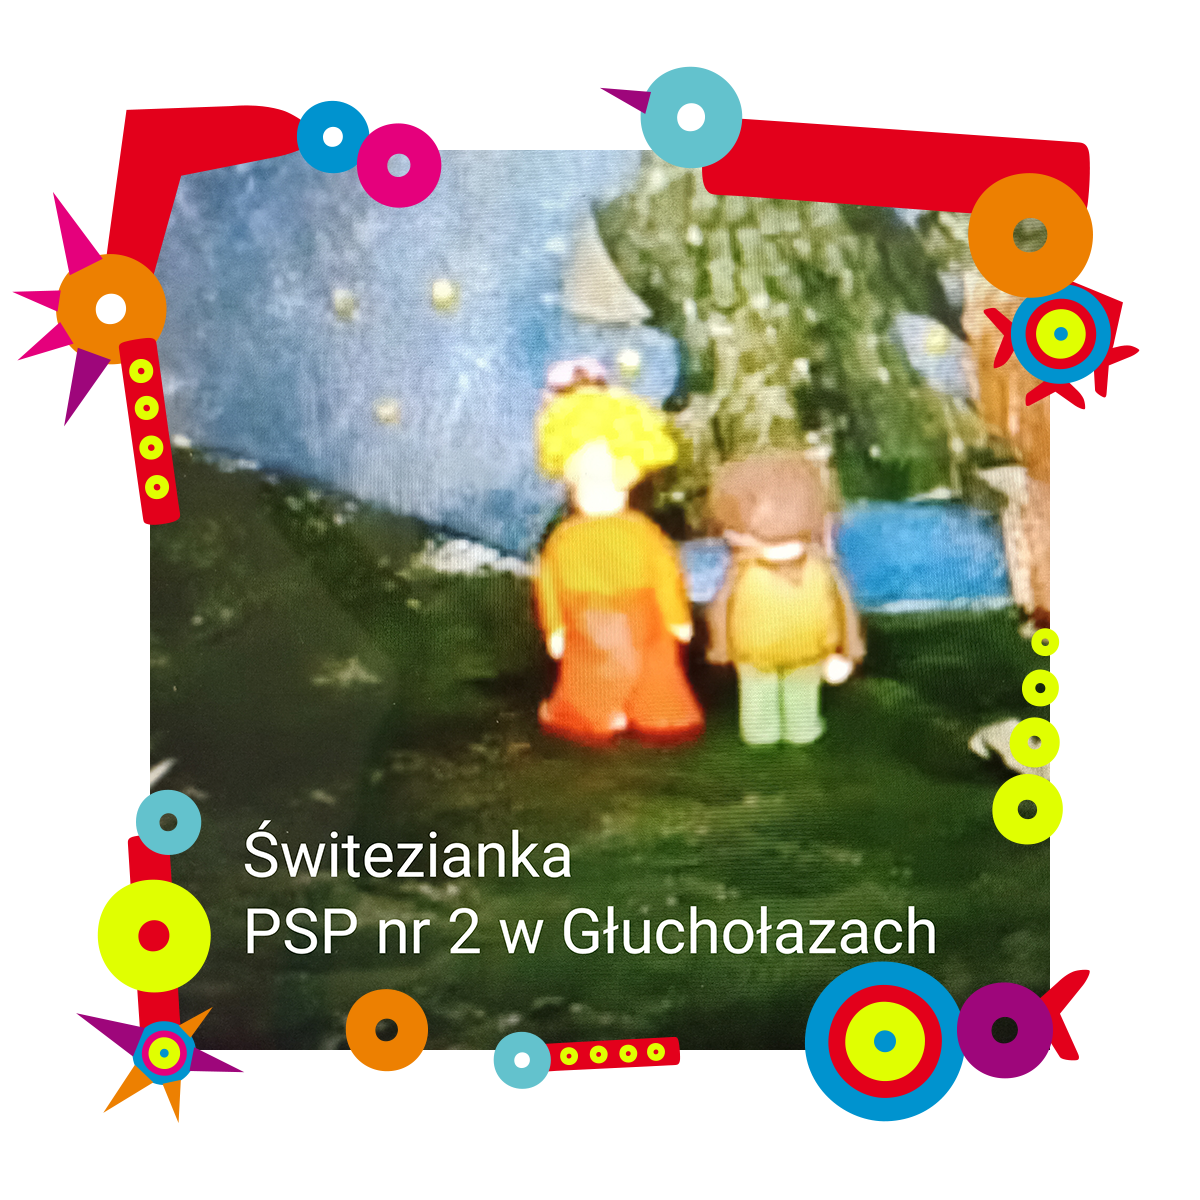 Kadr z filmu animowanego, na którym widać dwie osoby. Stoją na trawie, za nimi drzewo oraz niebo. Na kadrze napis: Świtezianka PSP nr 2 w Głuchołazach. Dookoła kadru kolorowa ramka.